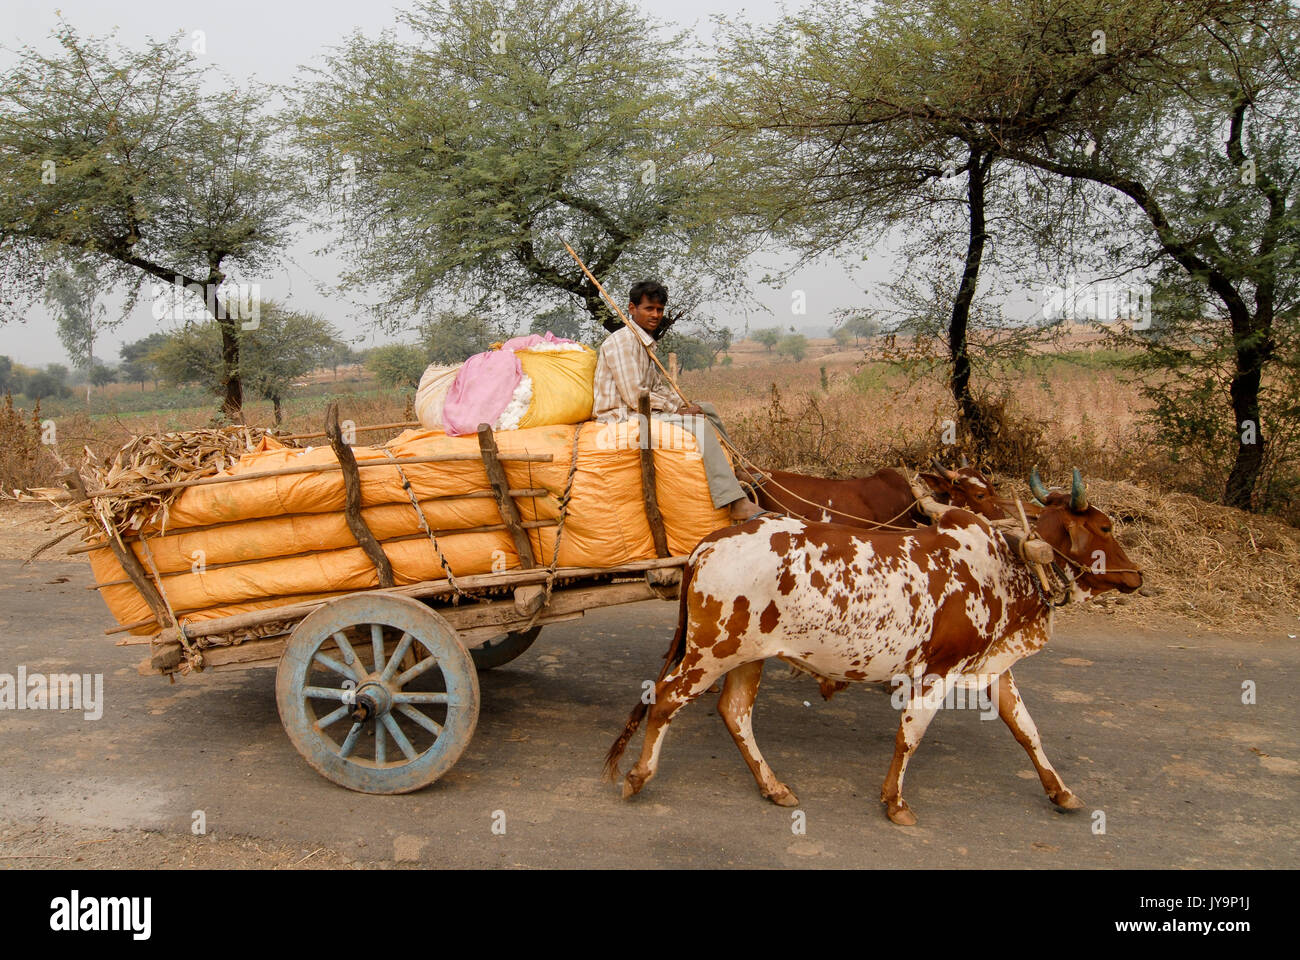 L'Inde Madhya Pradesh , coton, agriculteur récolte du coton transport par charrette pour la vente aux enchères/ INDIEN Le Madhya Pradesh , Baumwollanbau Baumwollernte, agriculteur transportiert mit Ochsengespann zur Auktion Banque D'Images